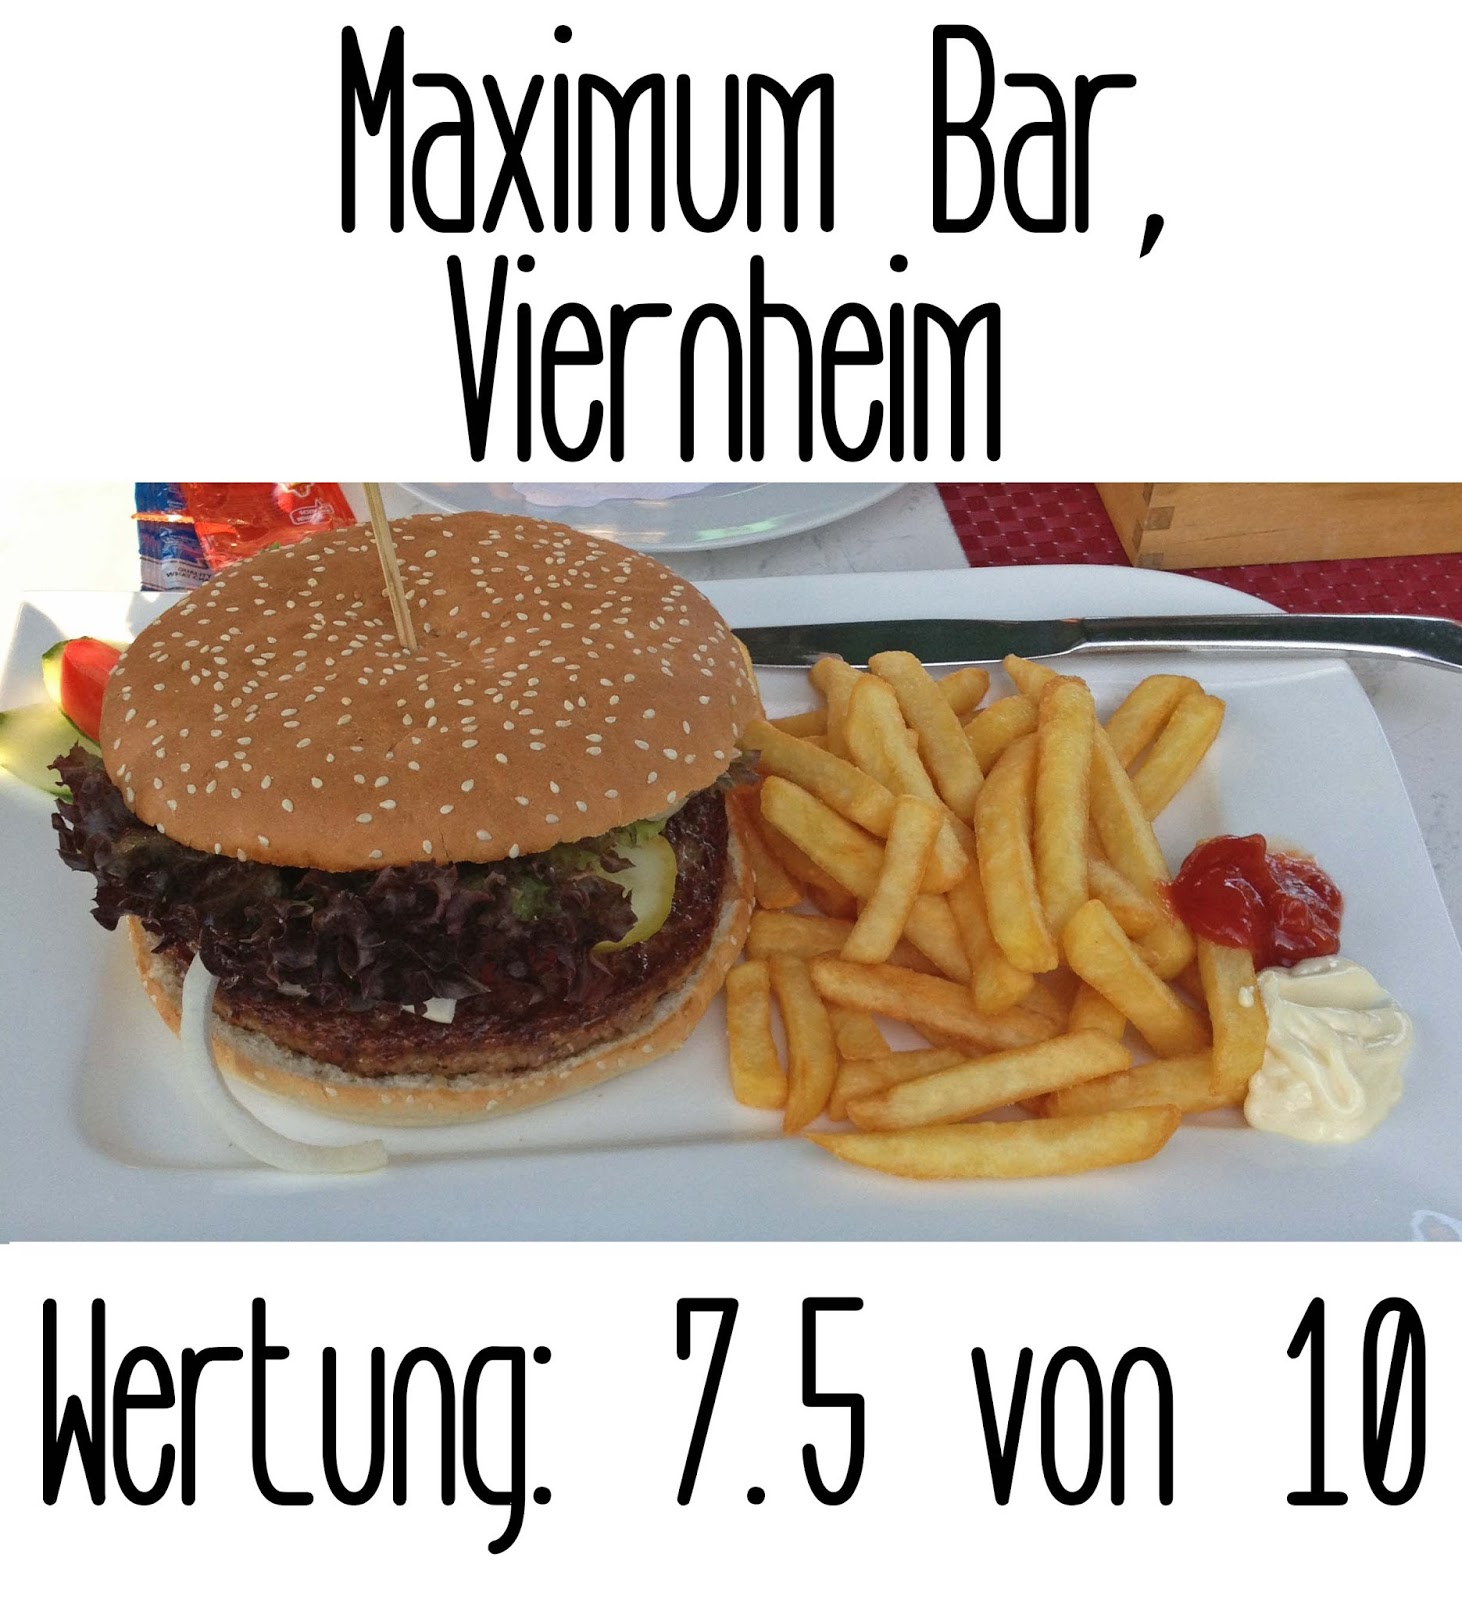 http://germanysbestburger.blogspot.de/2013/08/maximum-bar-viernheim.html